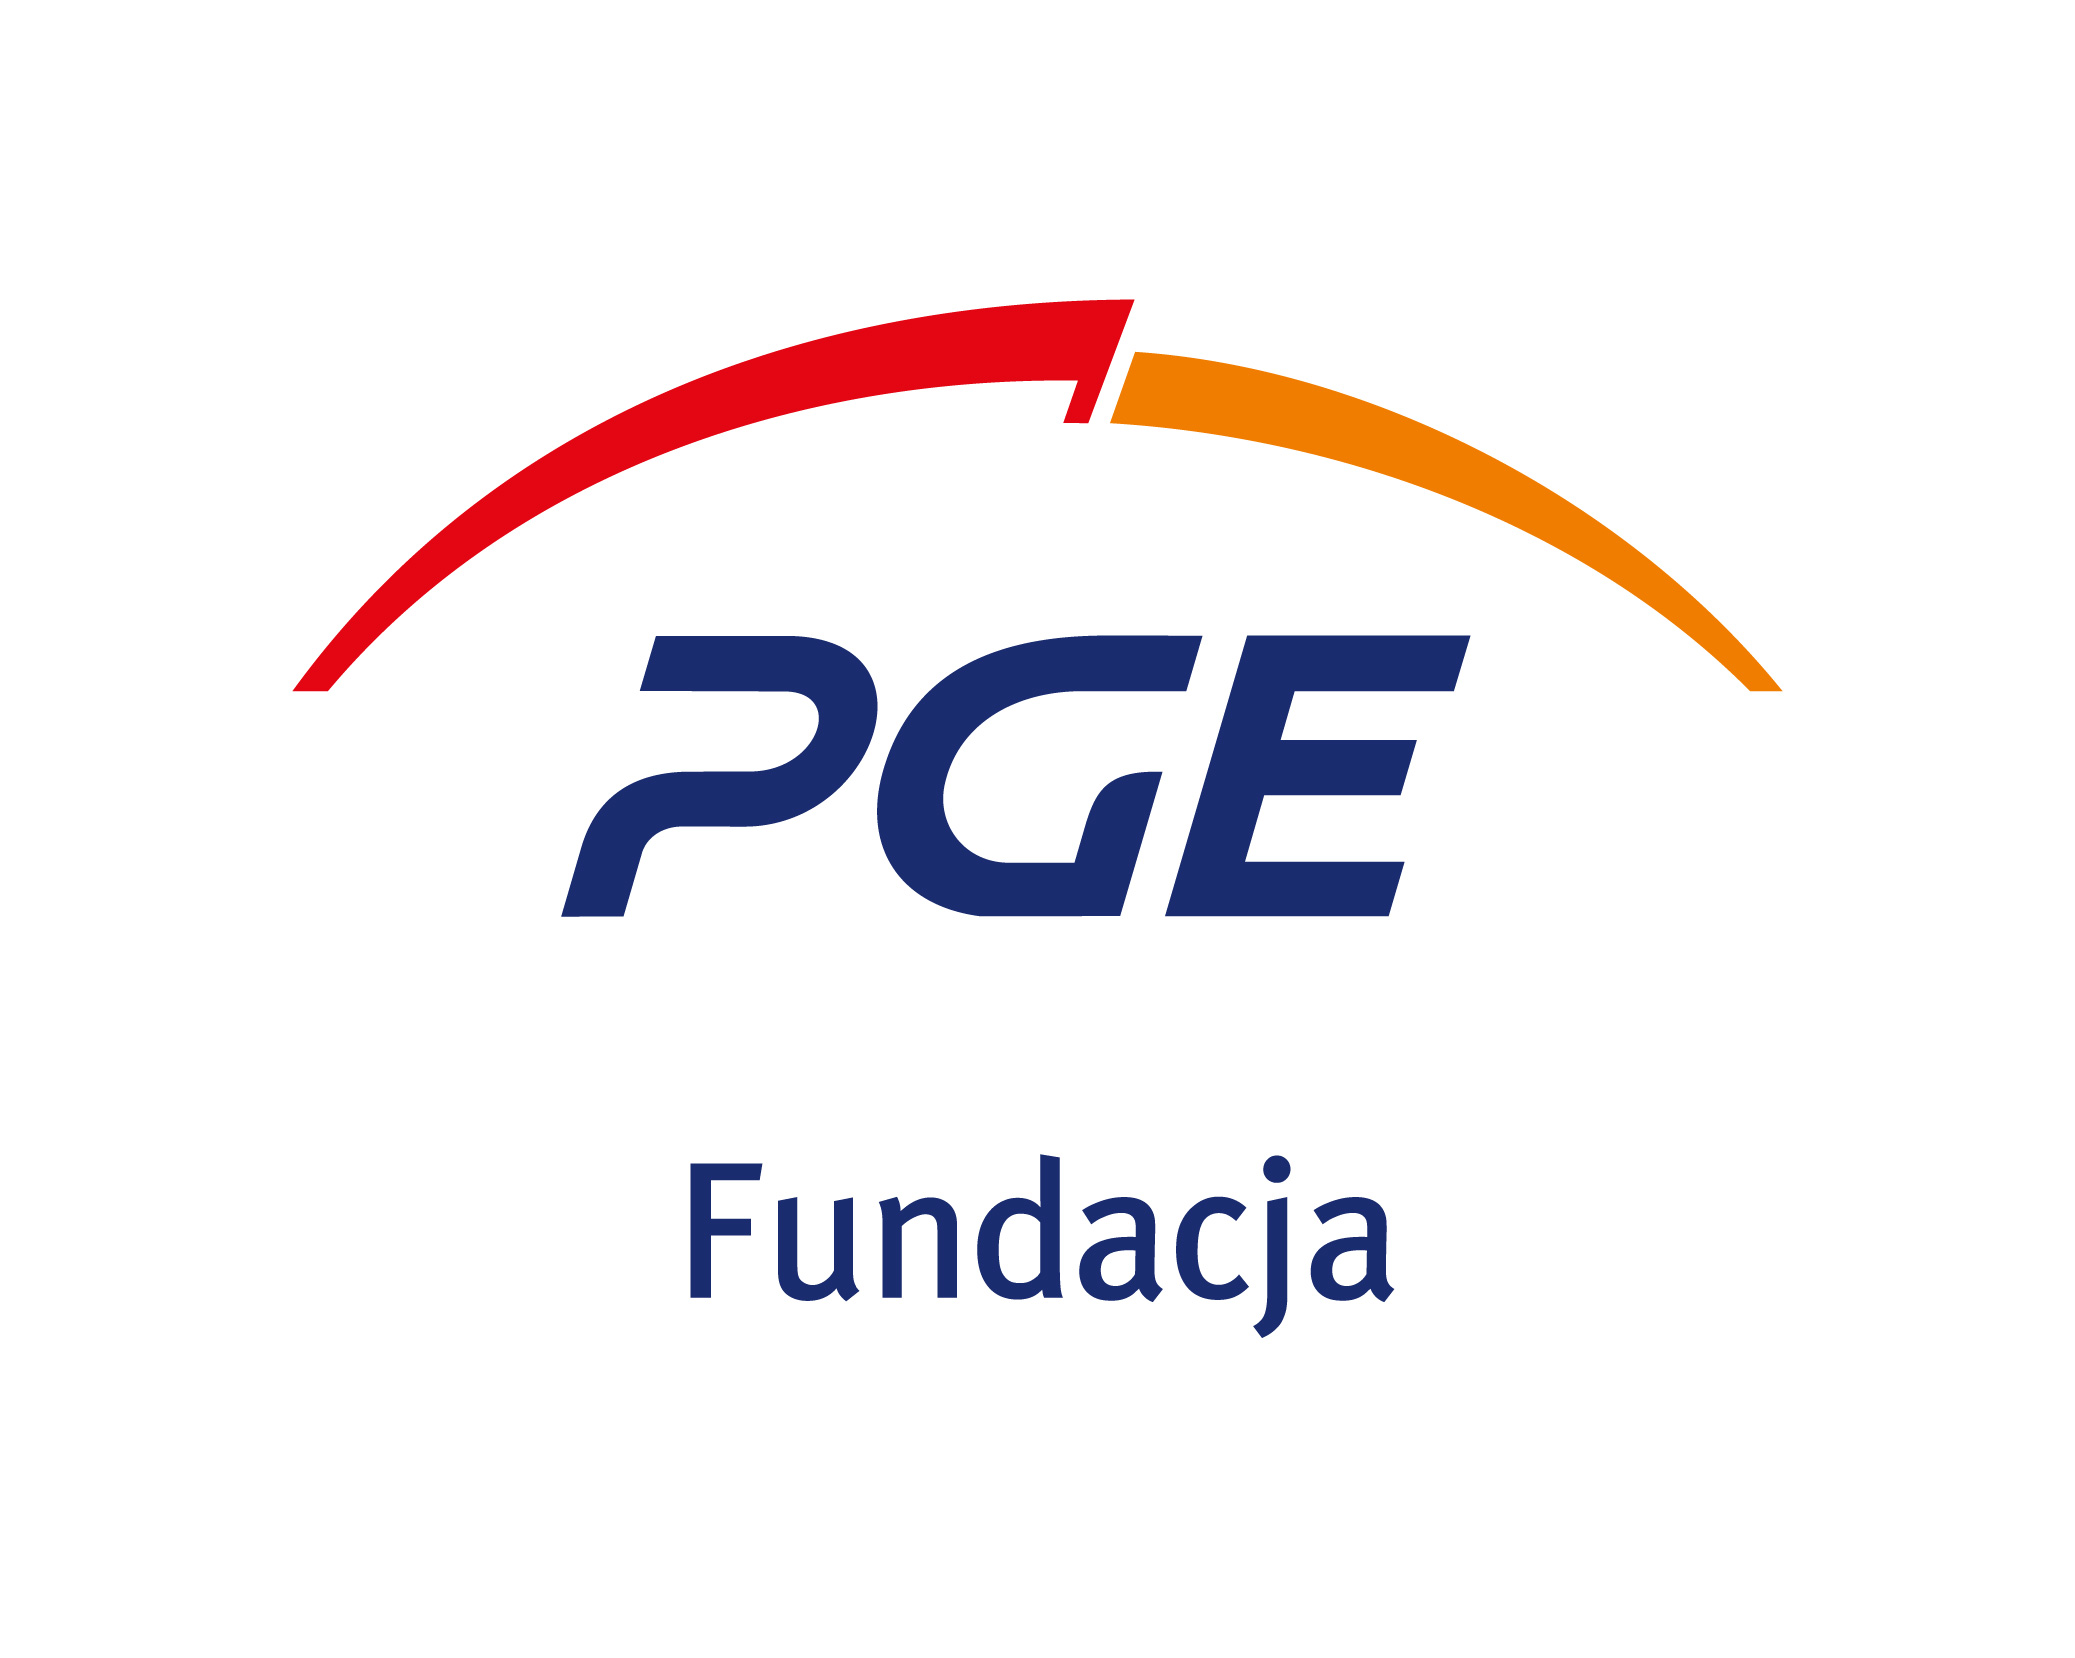 Fundacja PGE